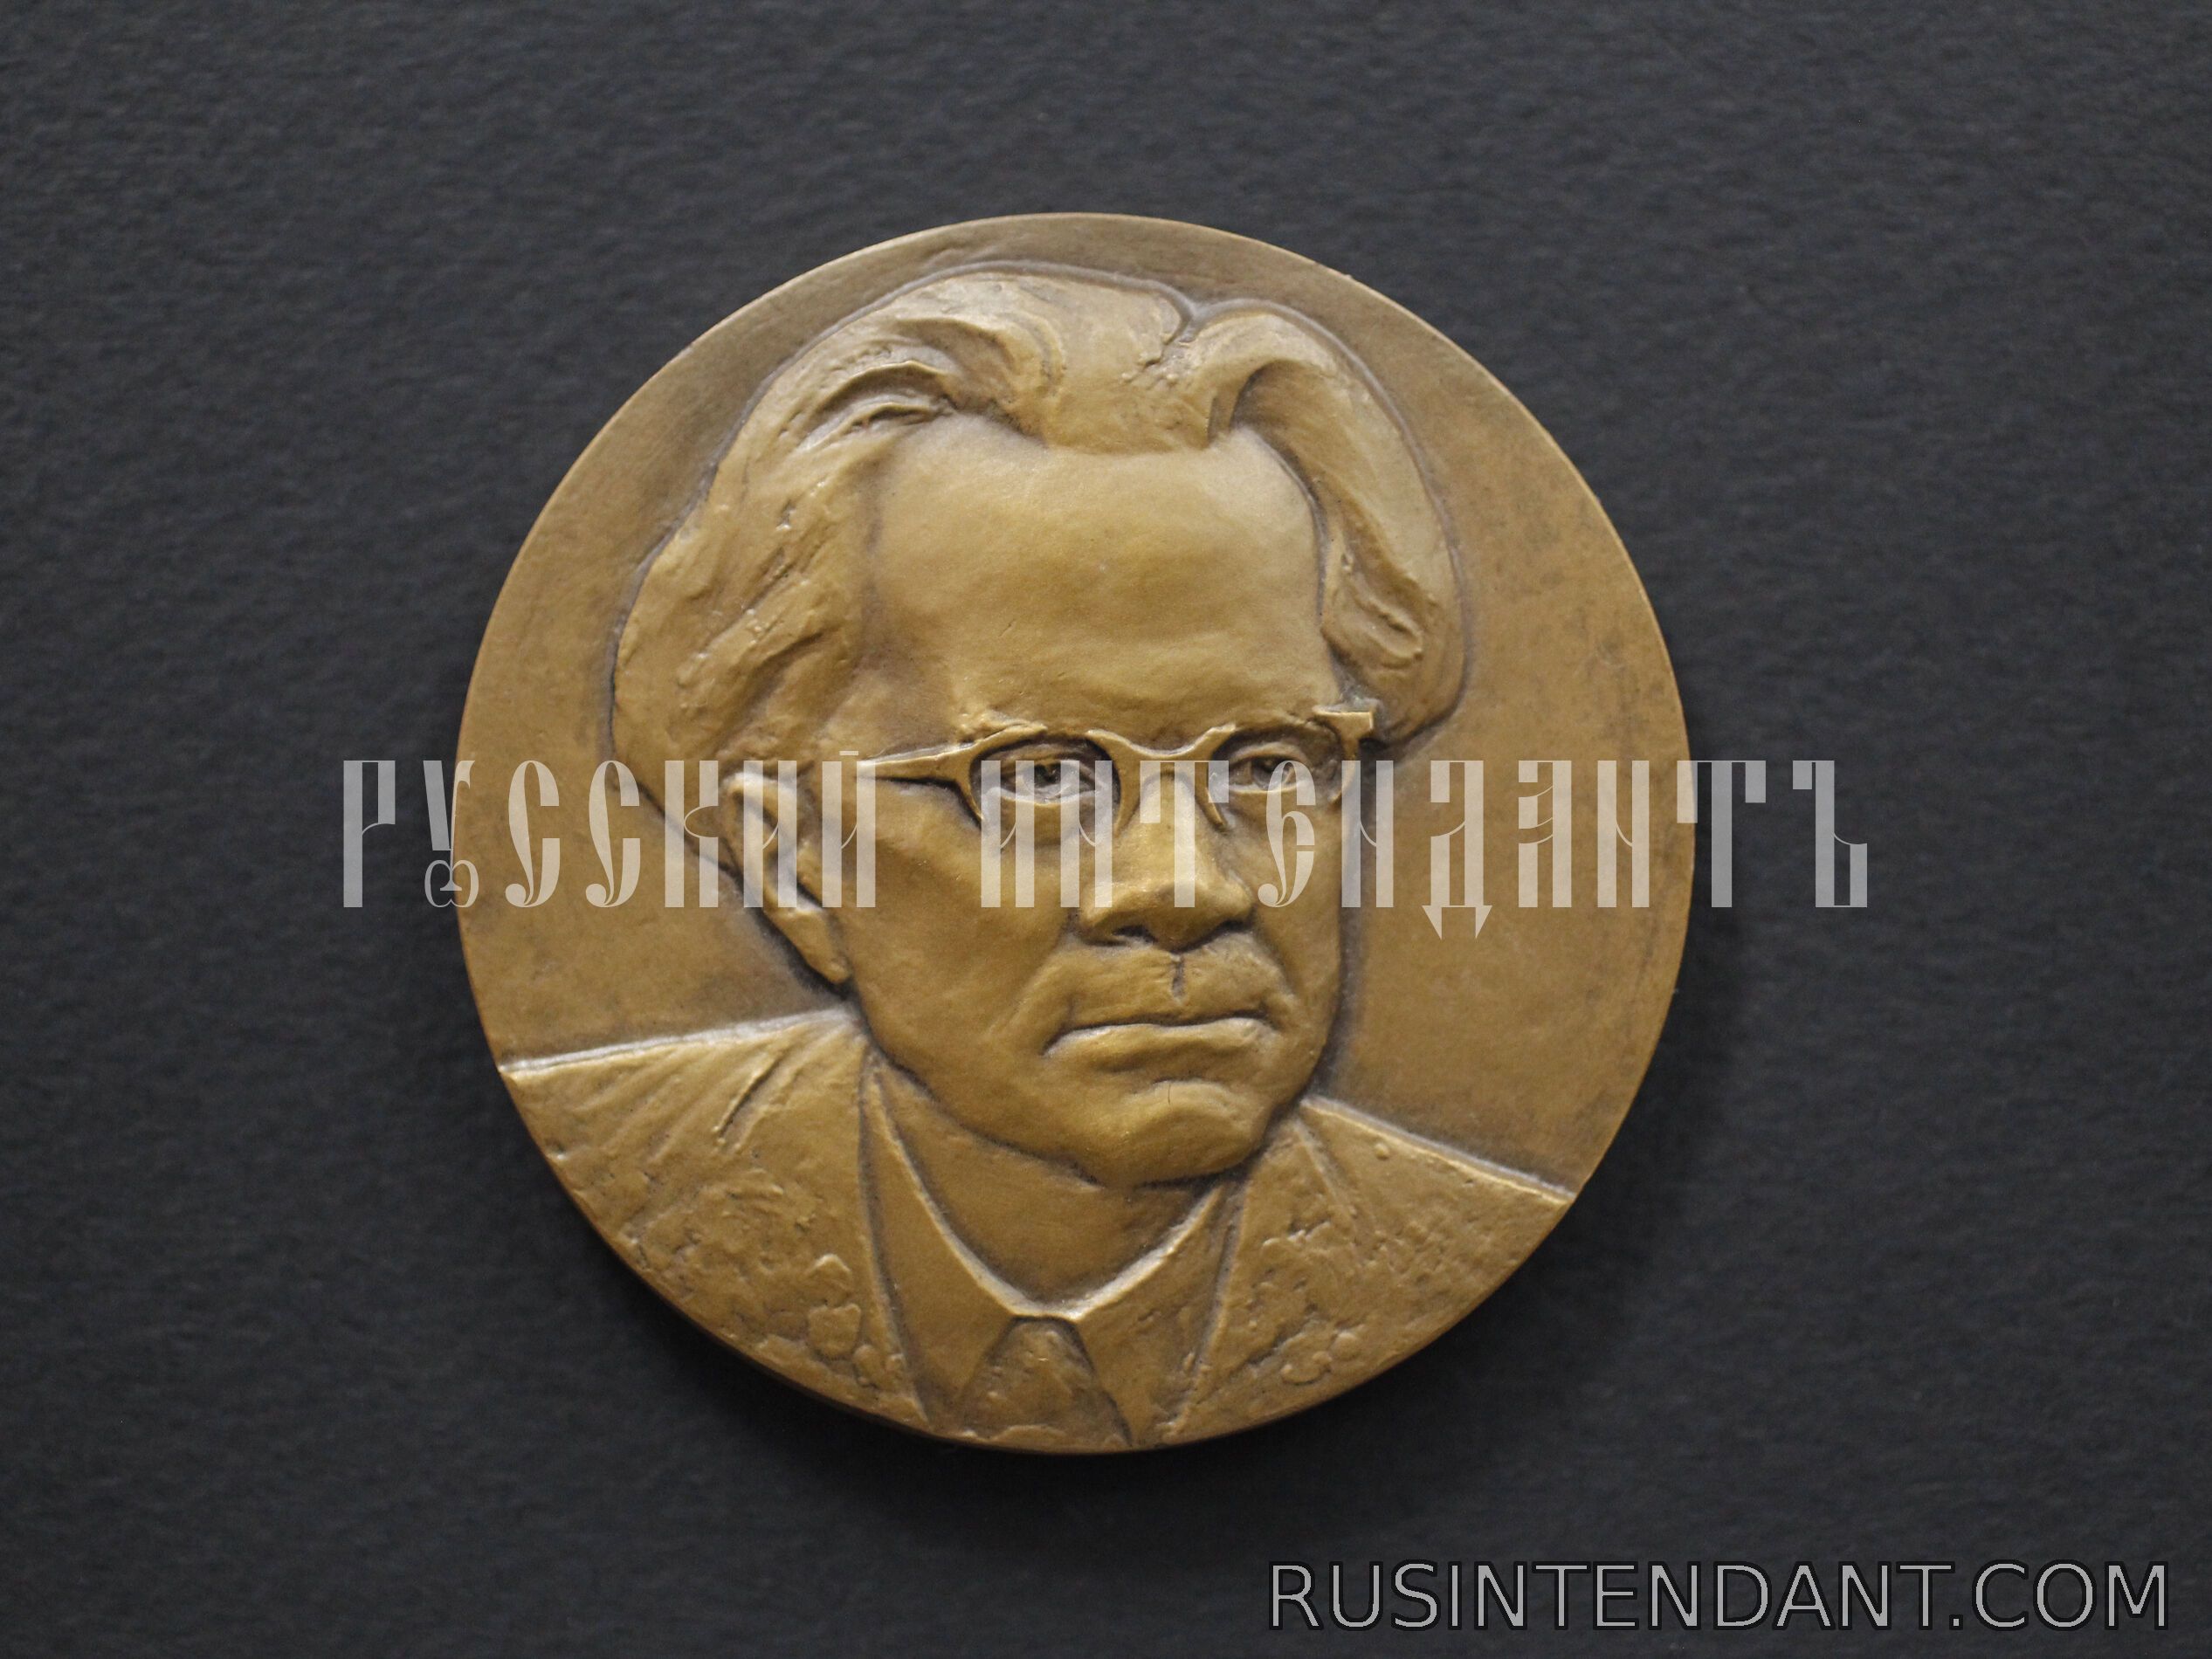 Фото 1: Настольная медаль «Федор Гладков» 